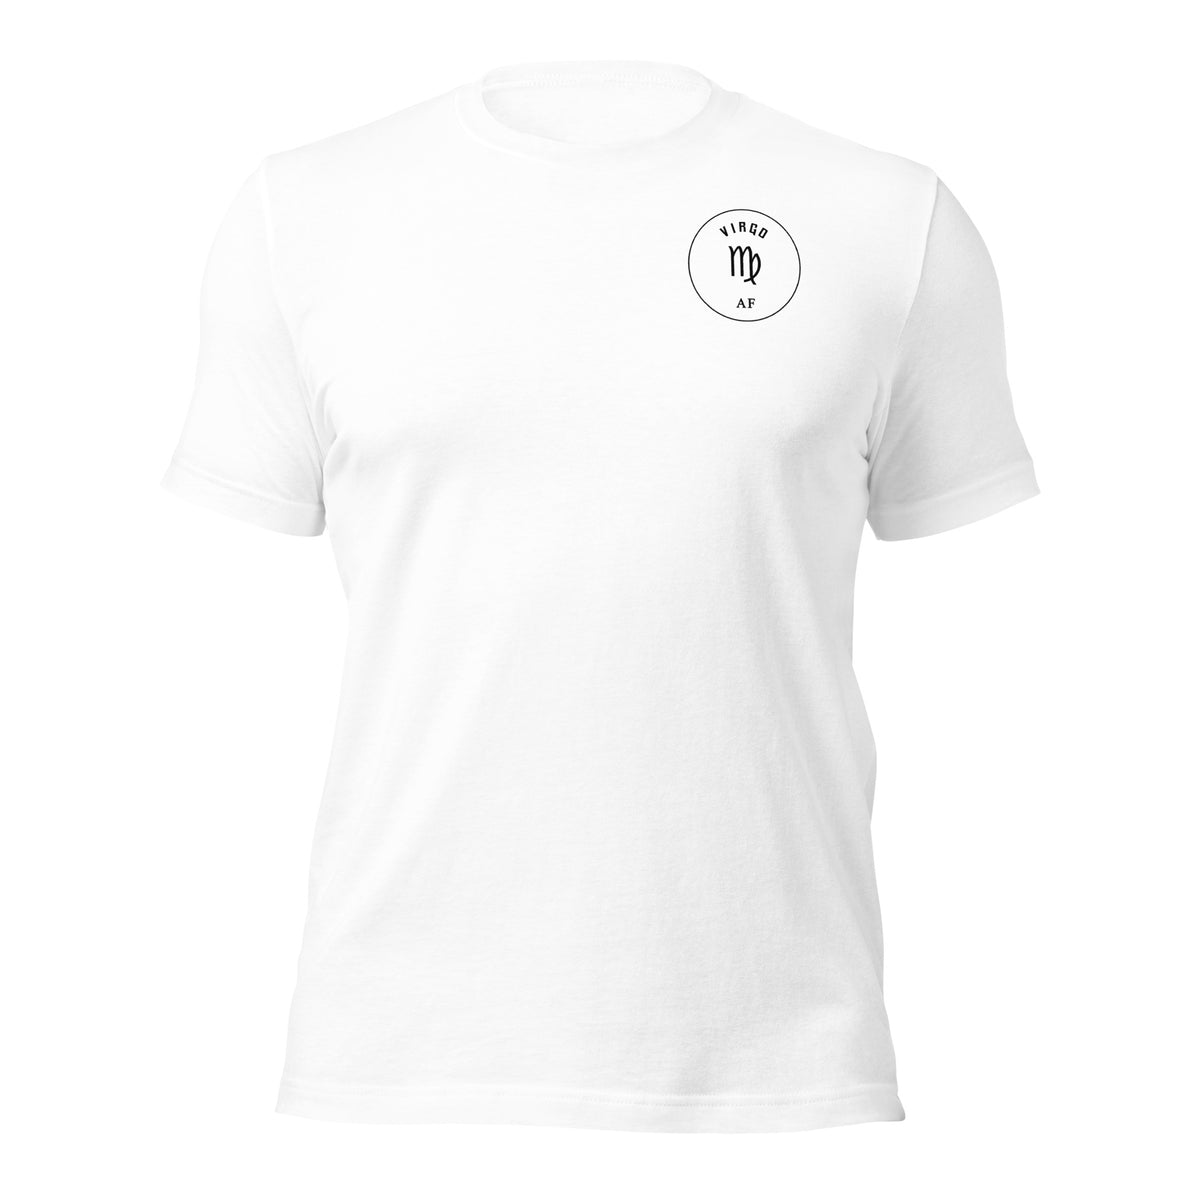 Virgo Alpha Female Men's T-Shirt